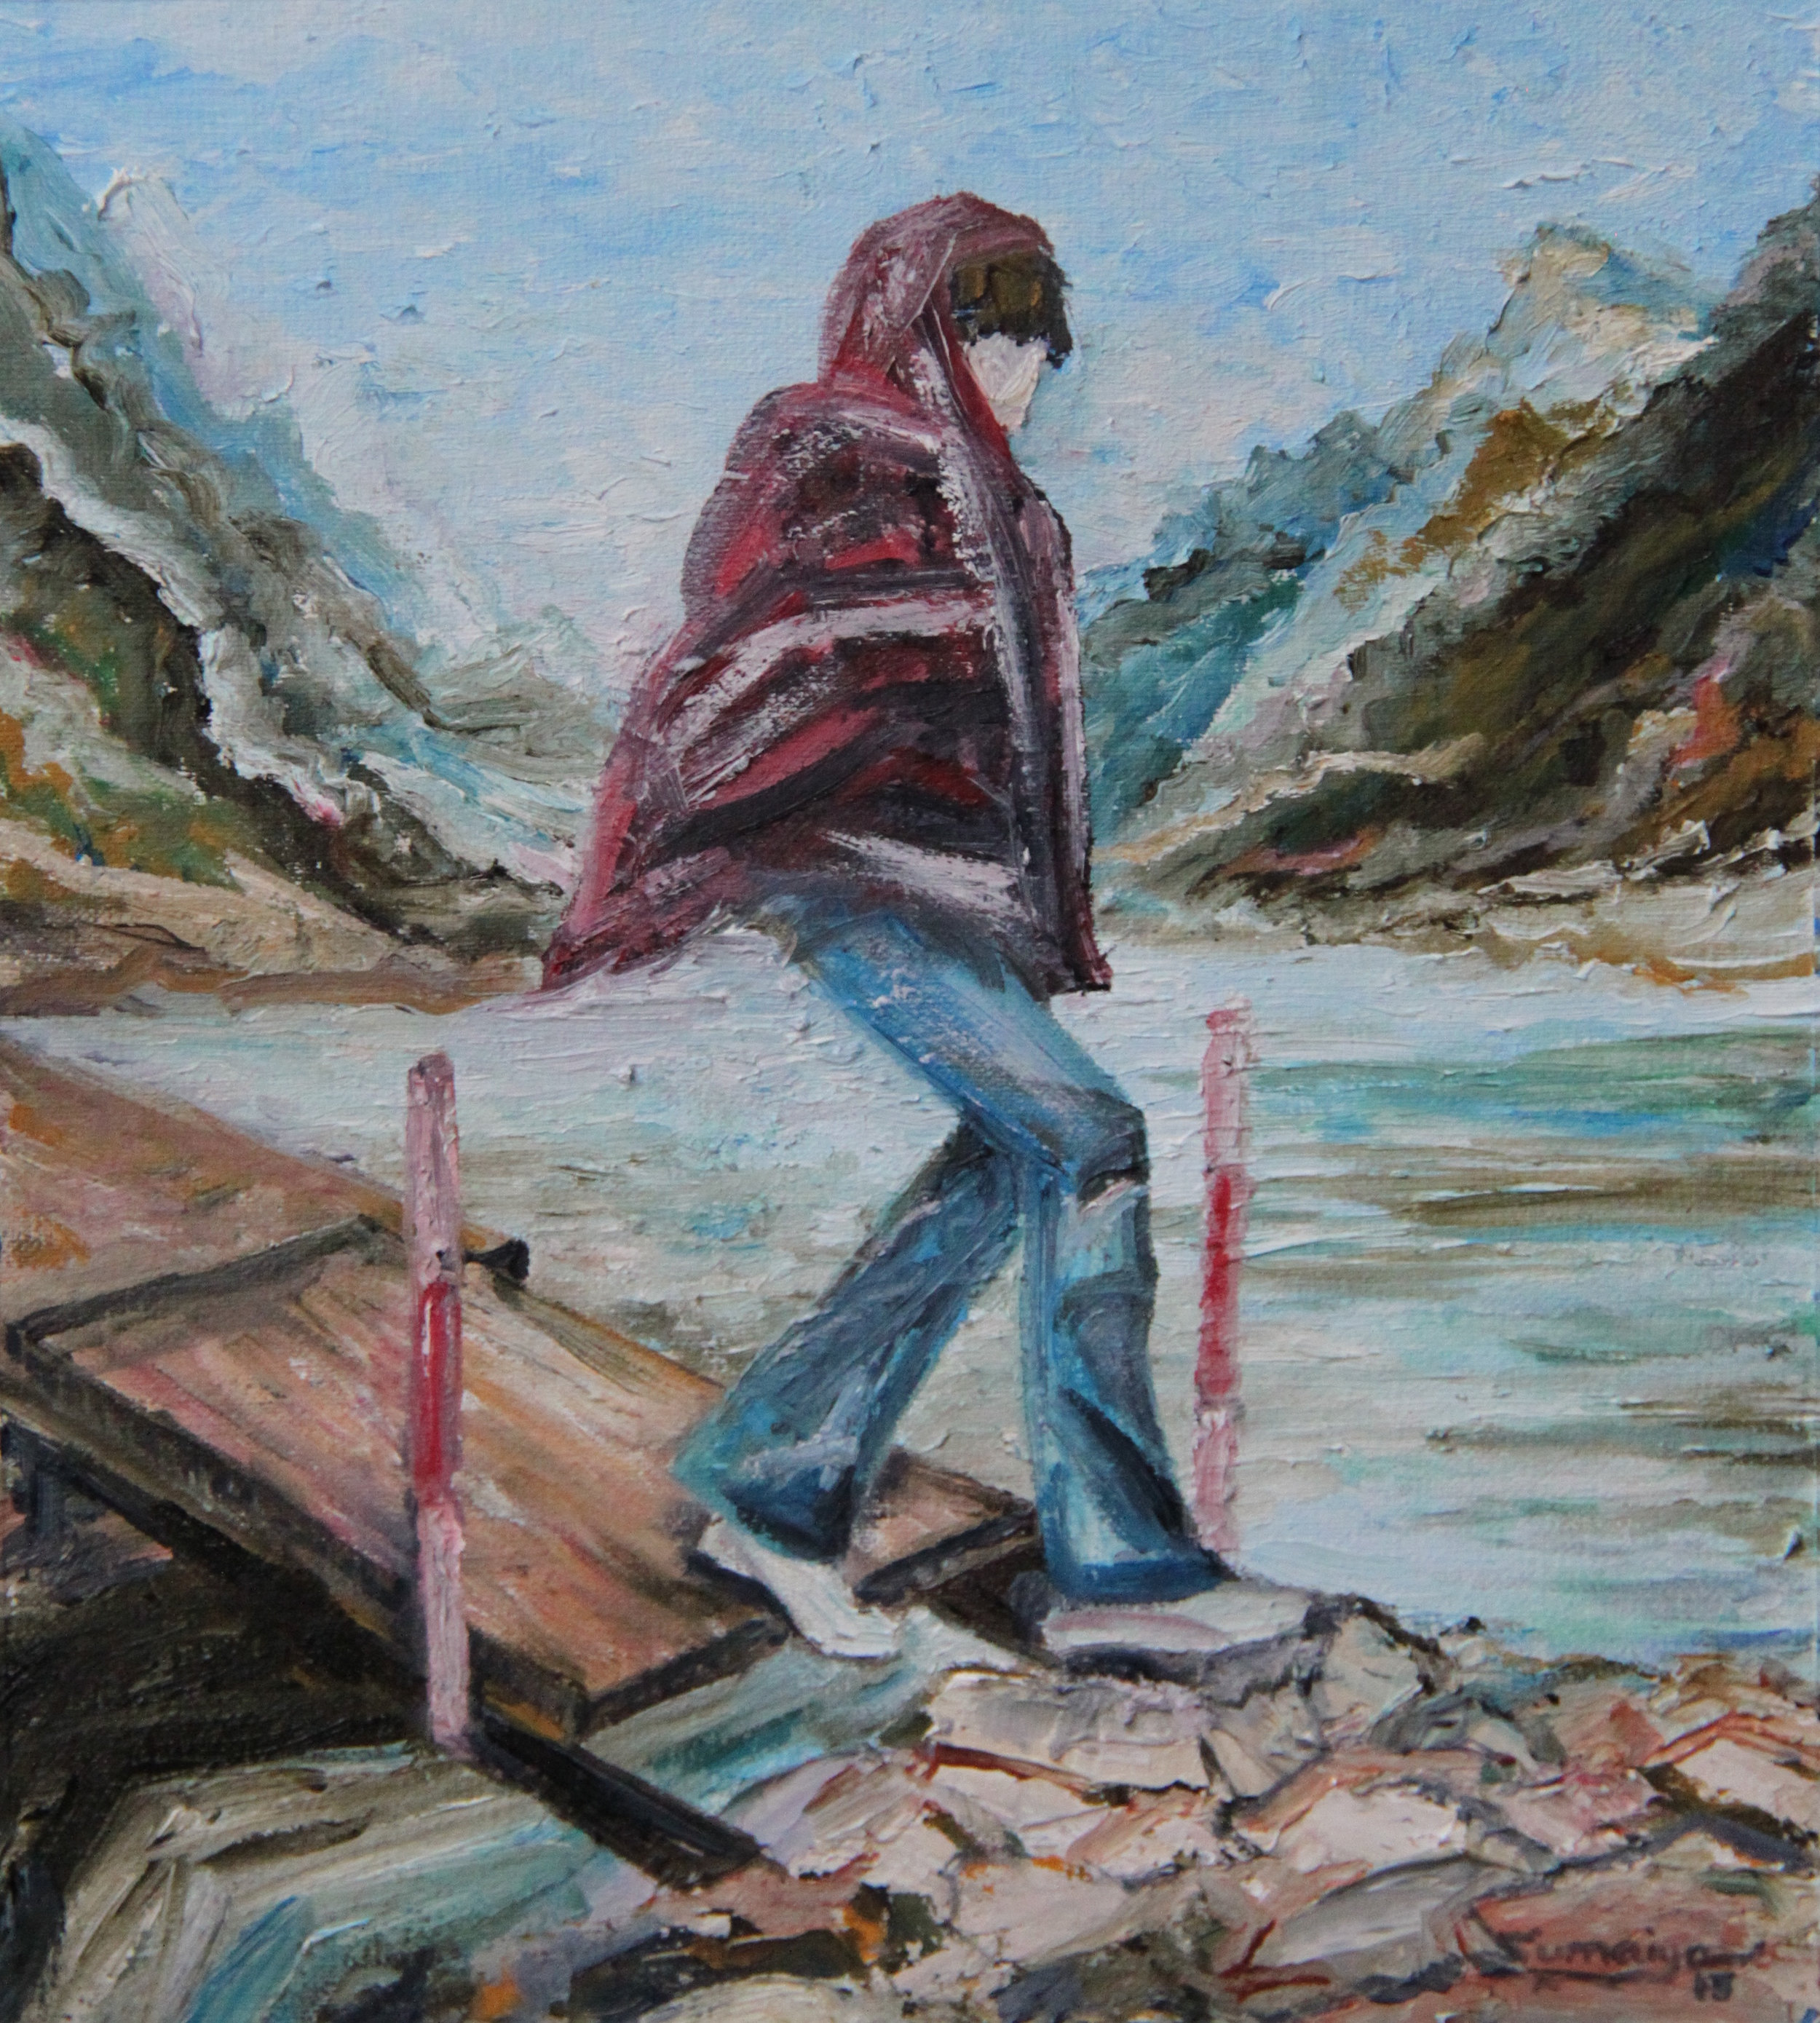 Girl crossing lake - zoomed in